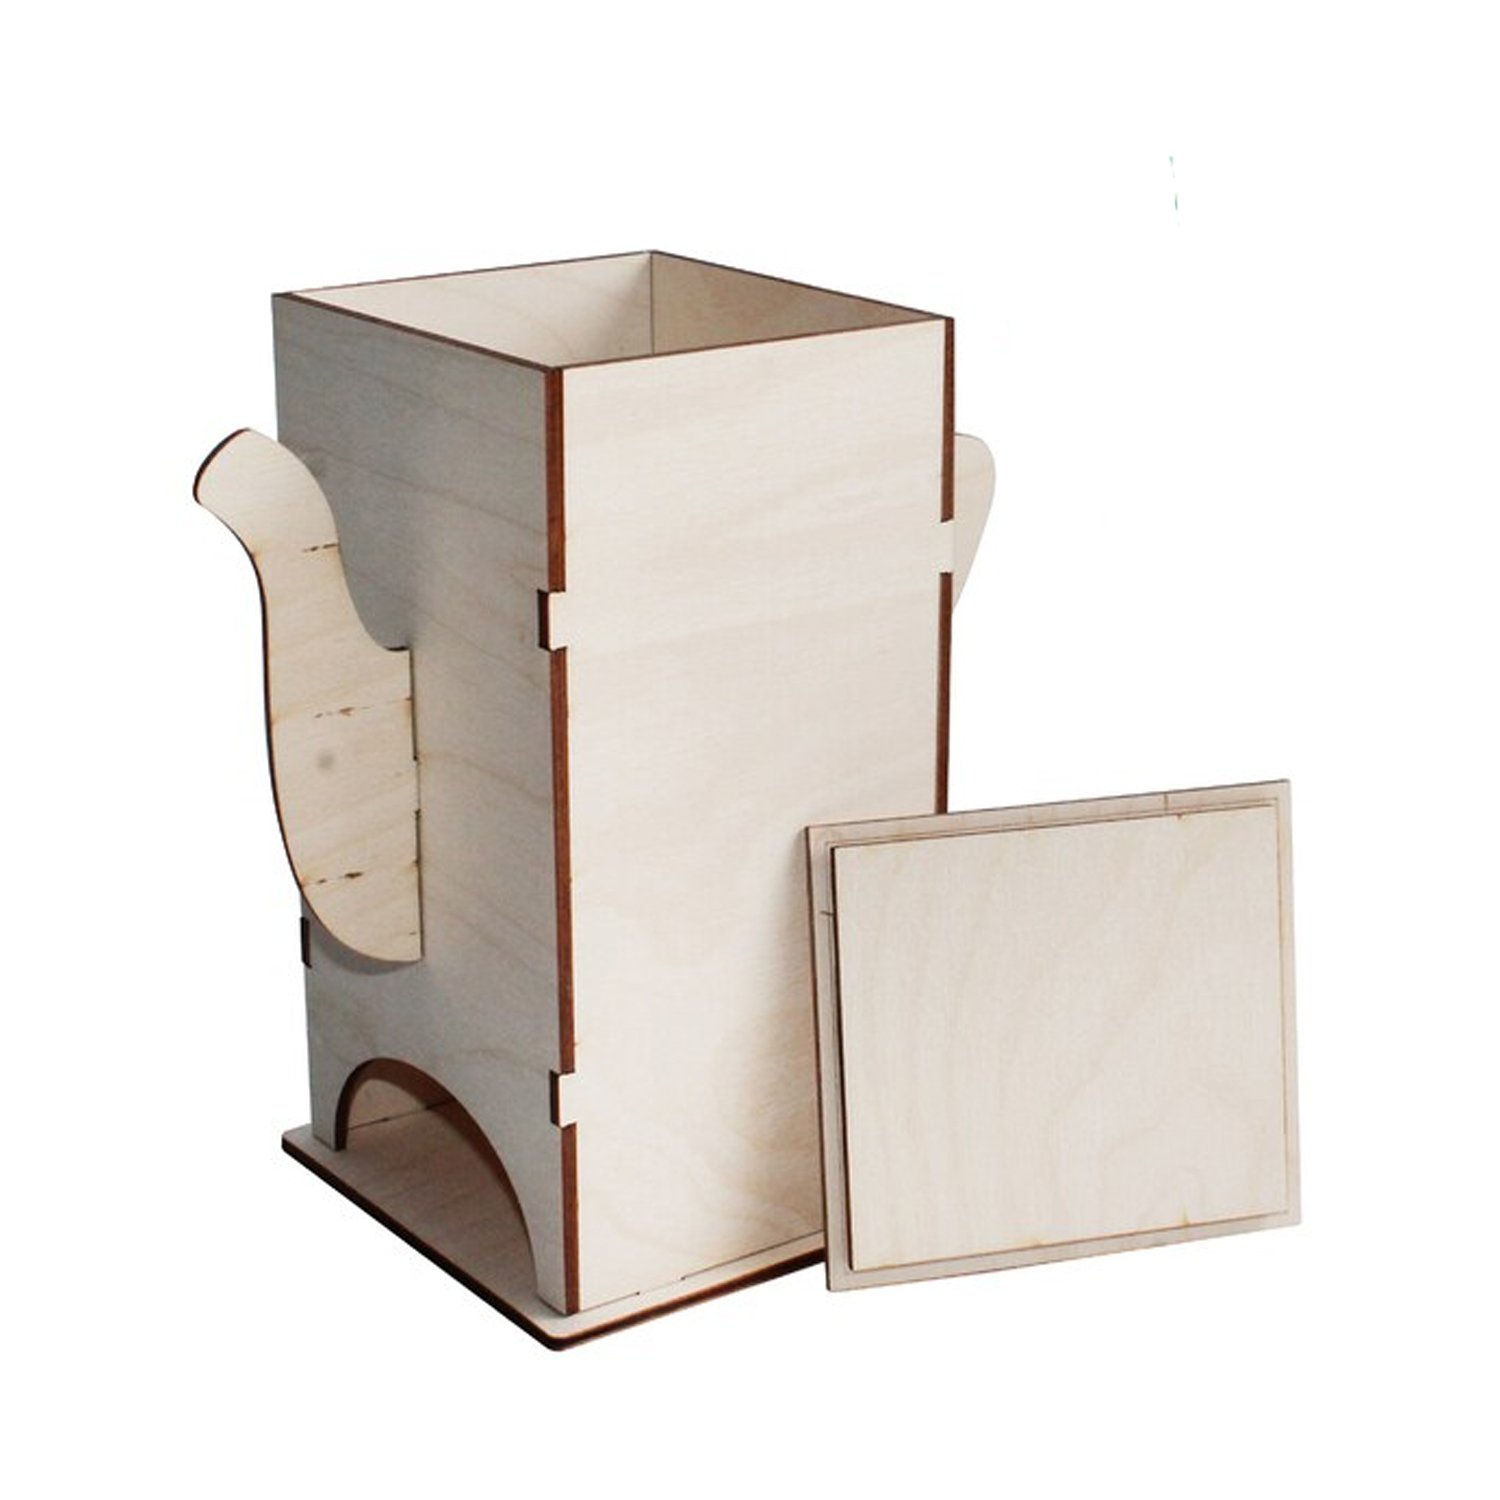 Caja de madera para infusiones con 4 compartimentos